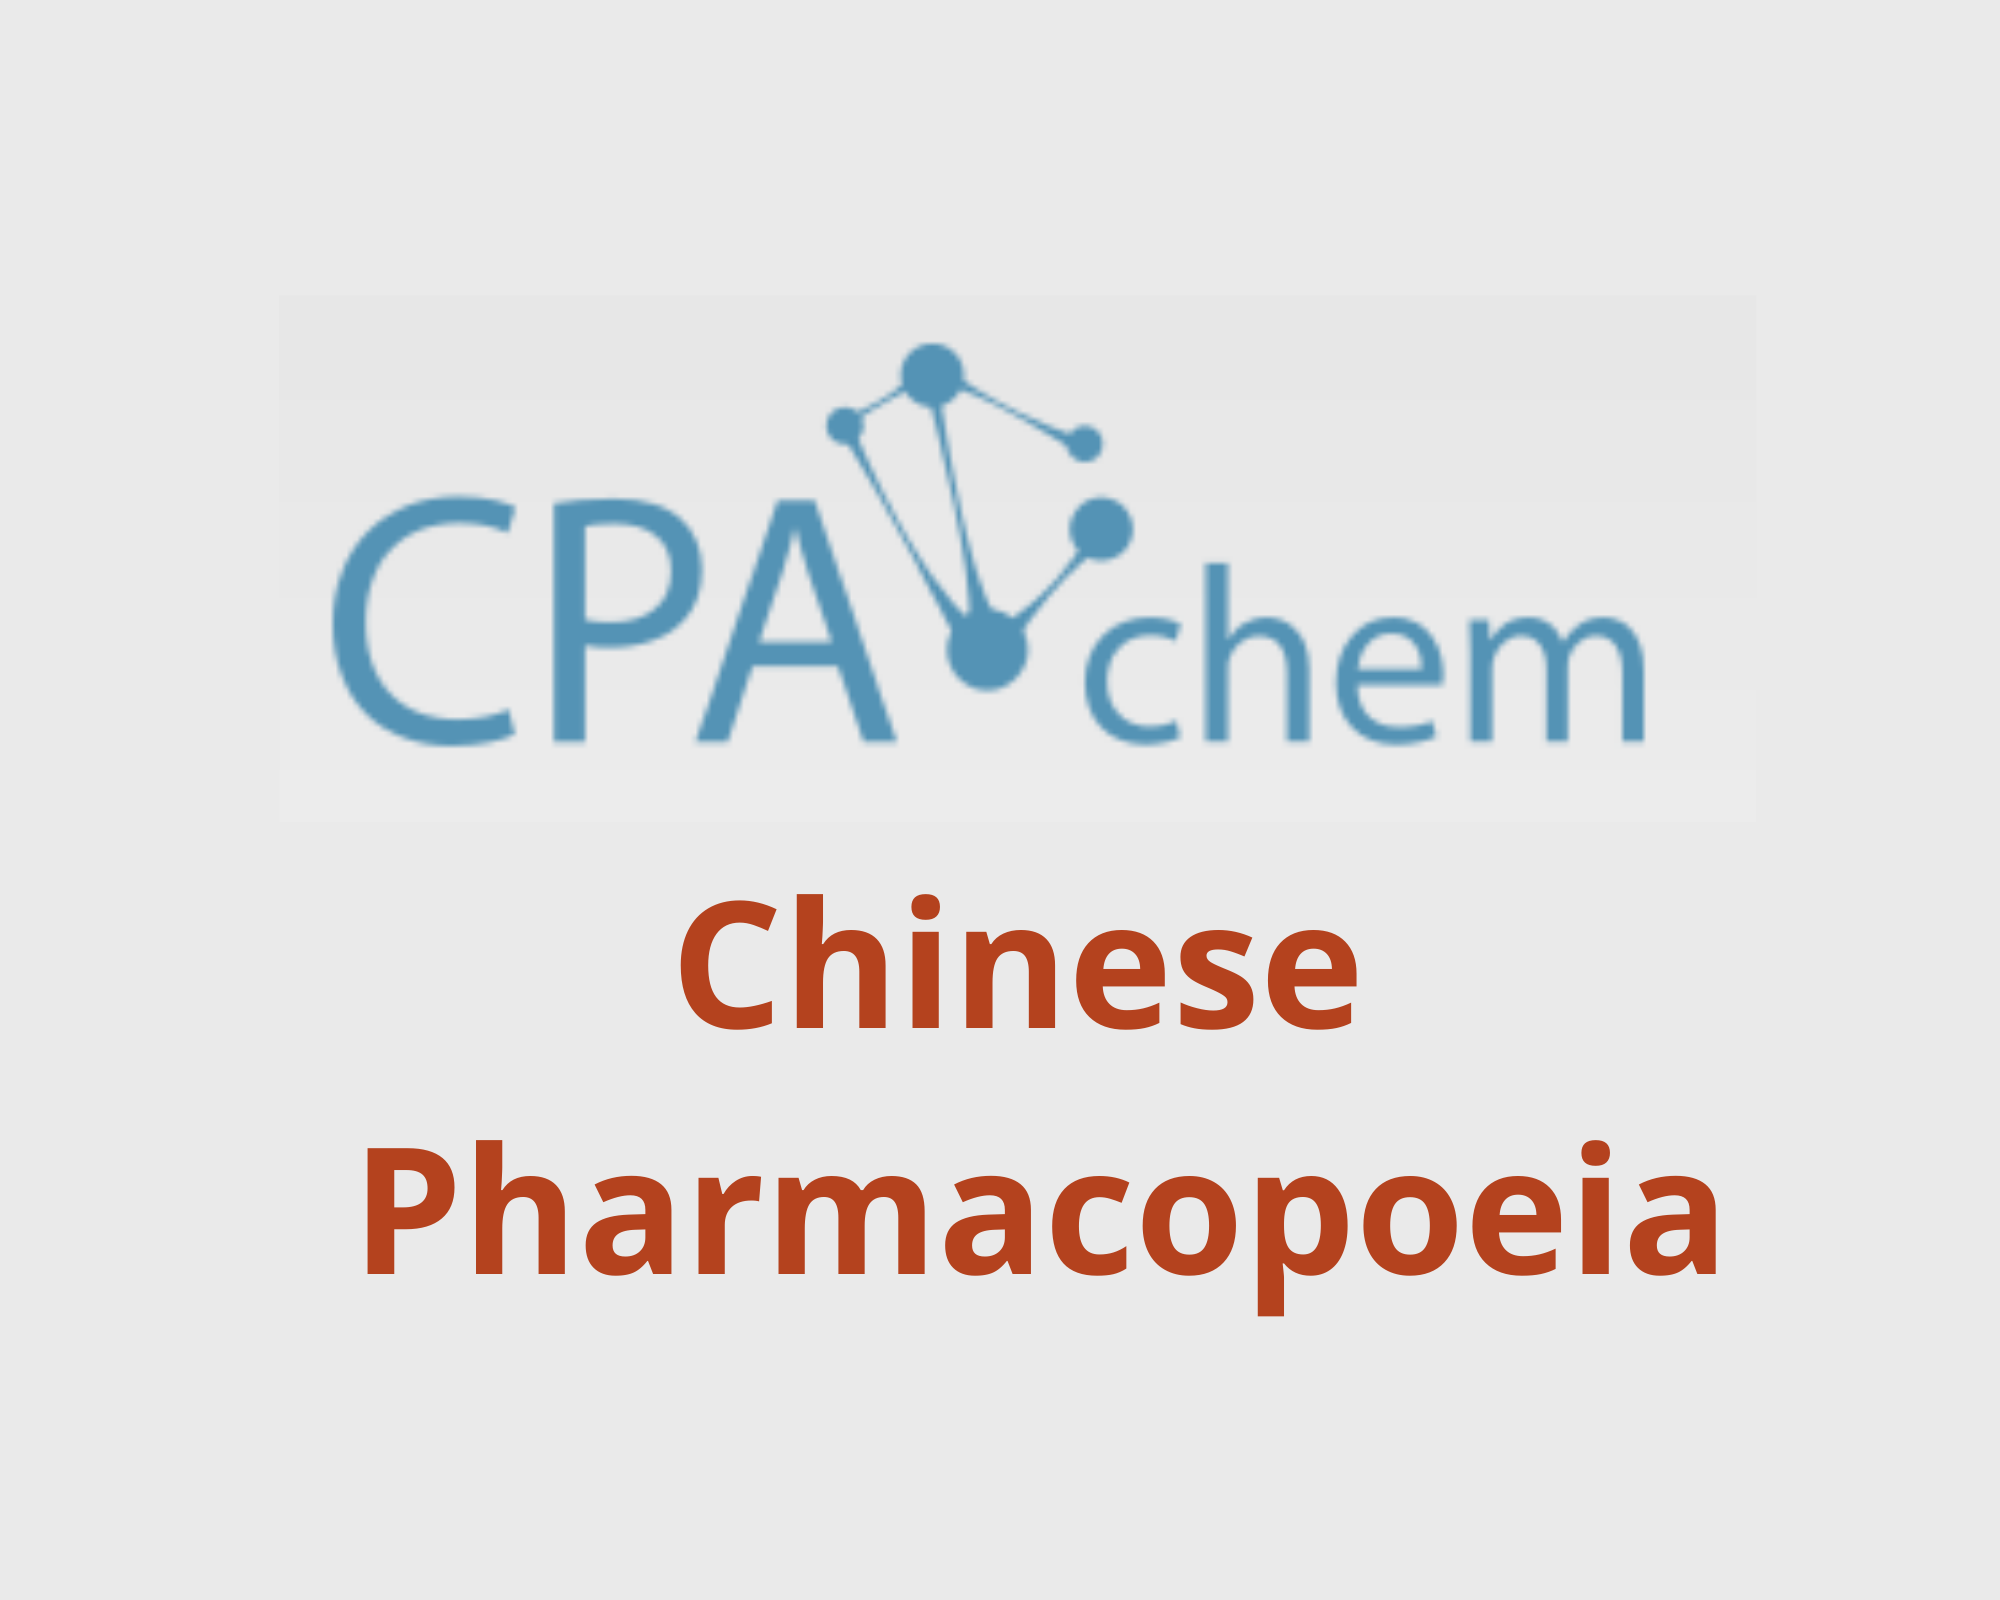 Danh sách các Thuốc Thử Dược theo Dược Điển Trung Quốc - Chinese Pharmacopoeia, CPAChem, Bungari